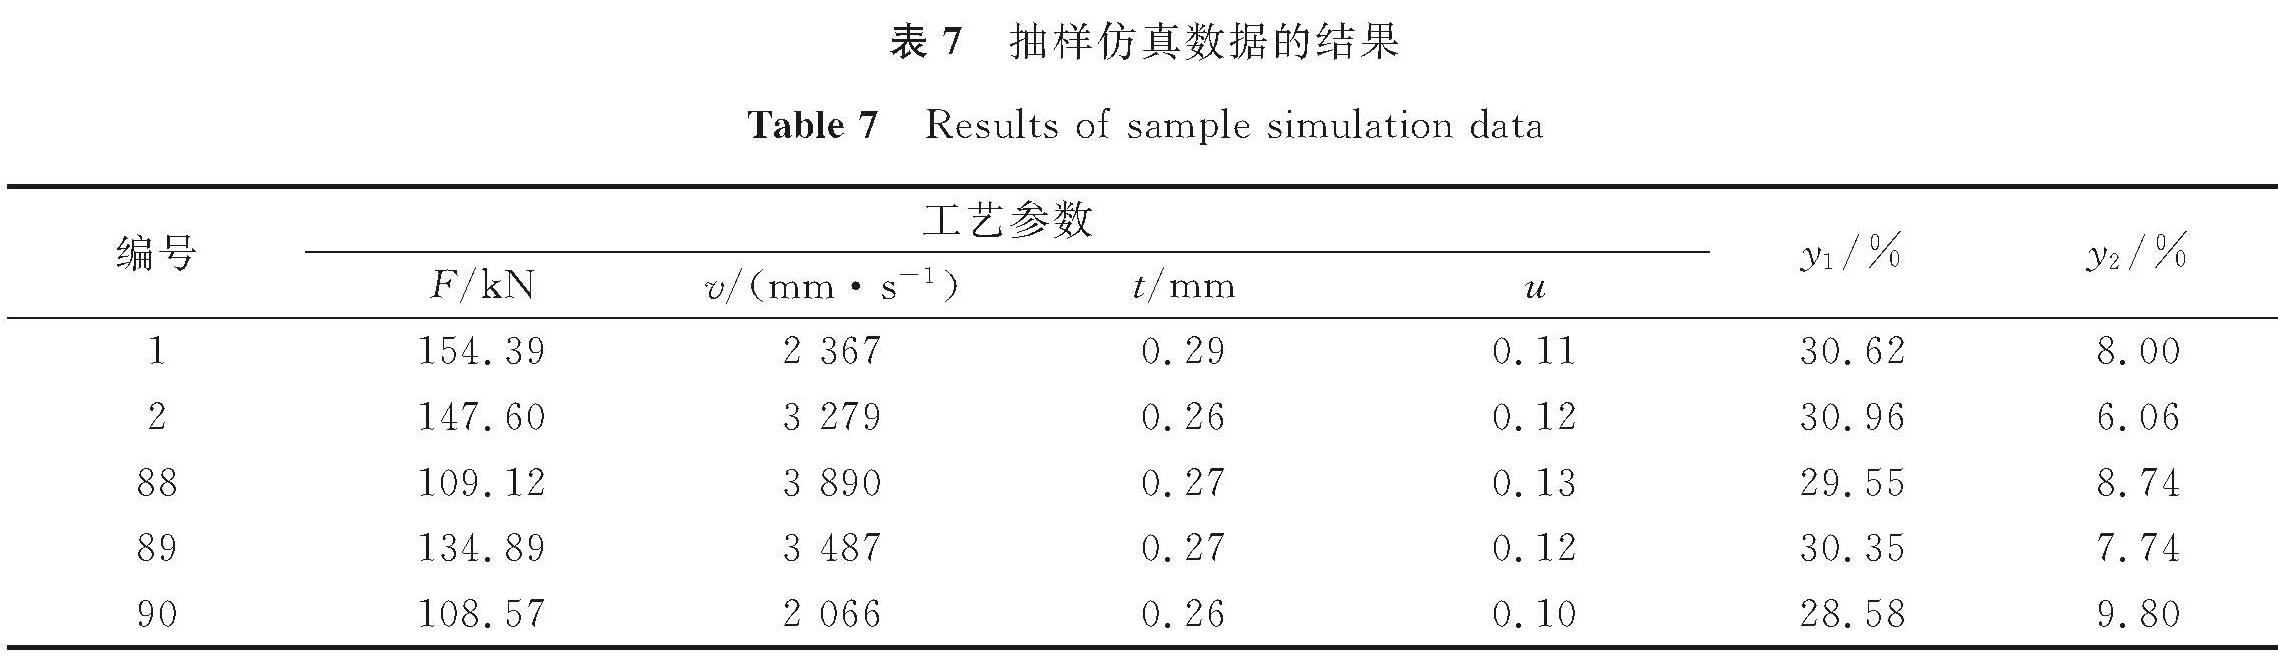 表7 抽样仿真数据的结果<br/>Table 7 Results of sample simulation data